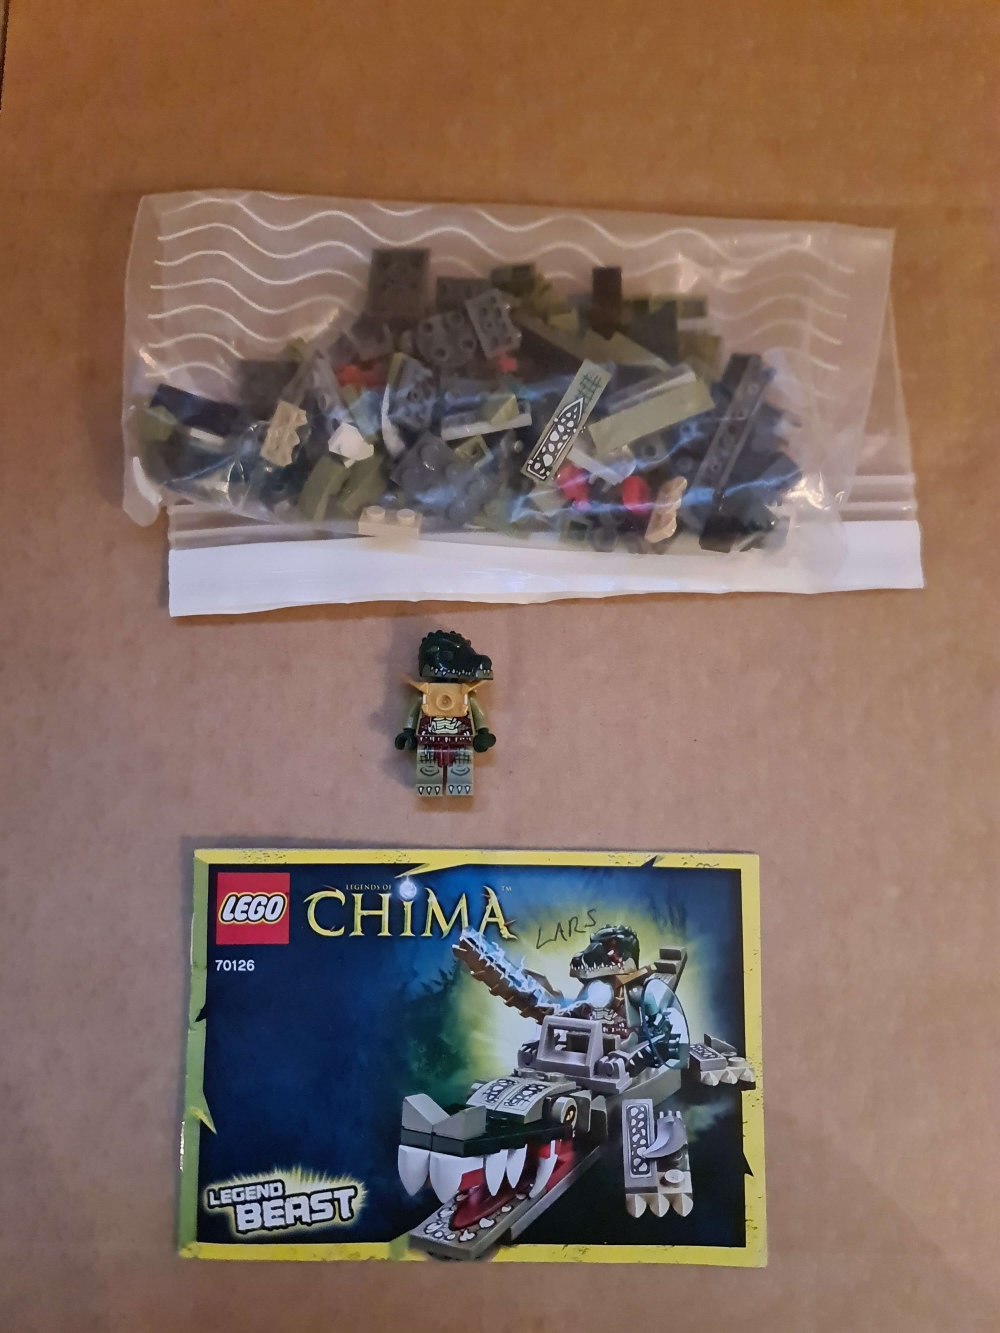 Sett 70126 fra Lego Chima serien. 

Meget pent. Komplett med manual. 
